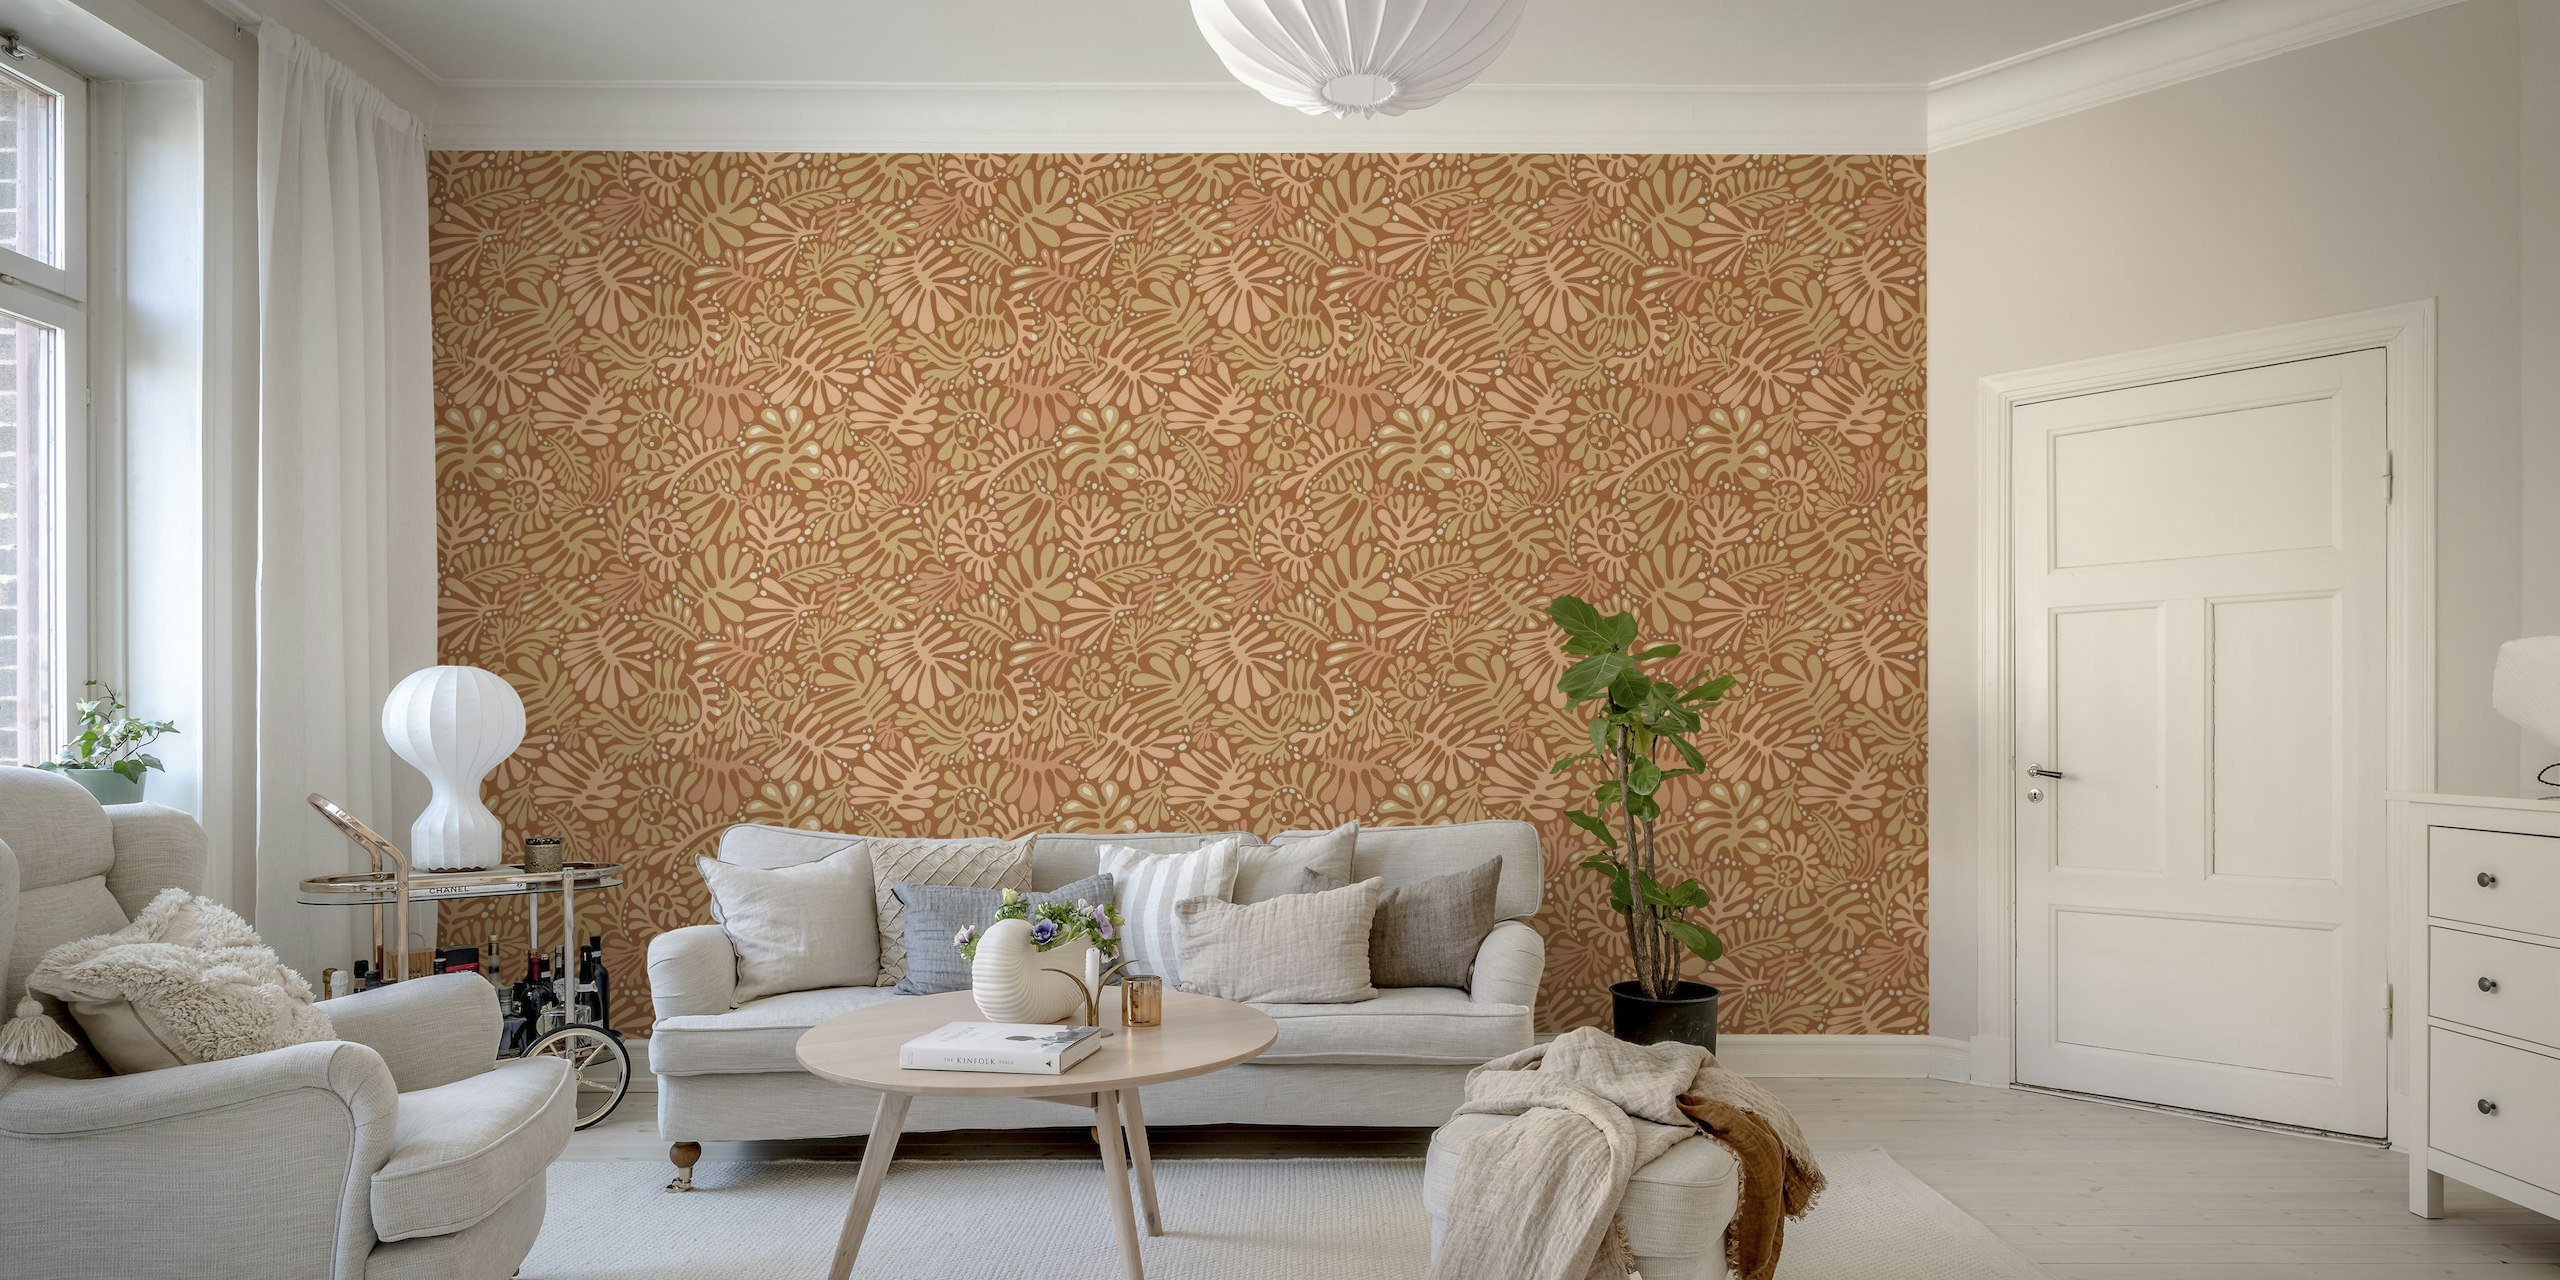 Fototapete mit rostigem Terrakotta-Blättermuster, dezente Erdtöne für natürliches Dekor